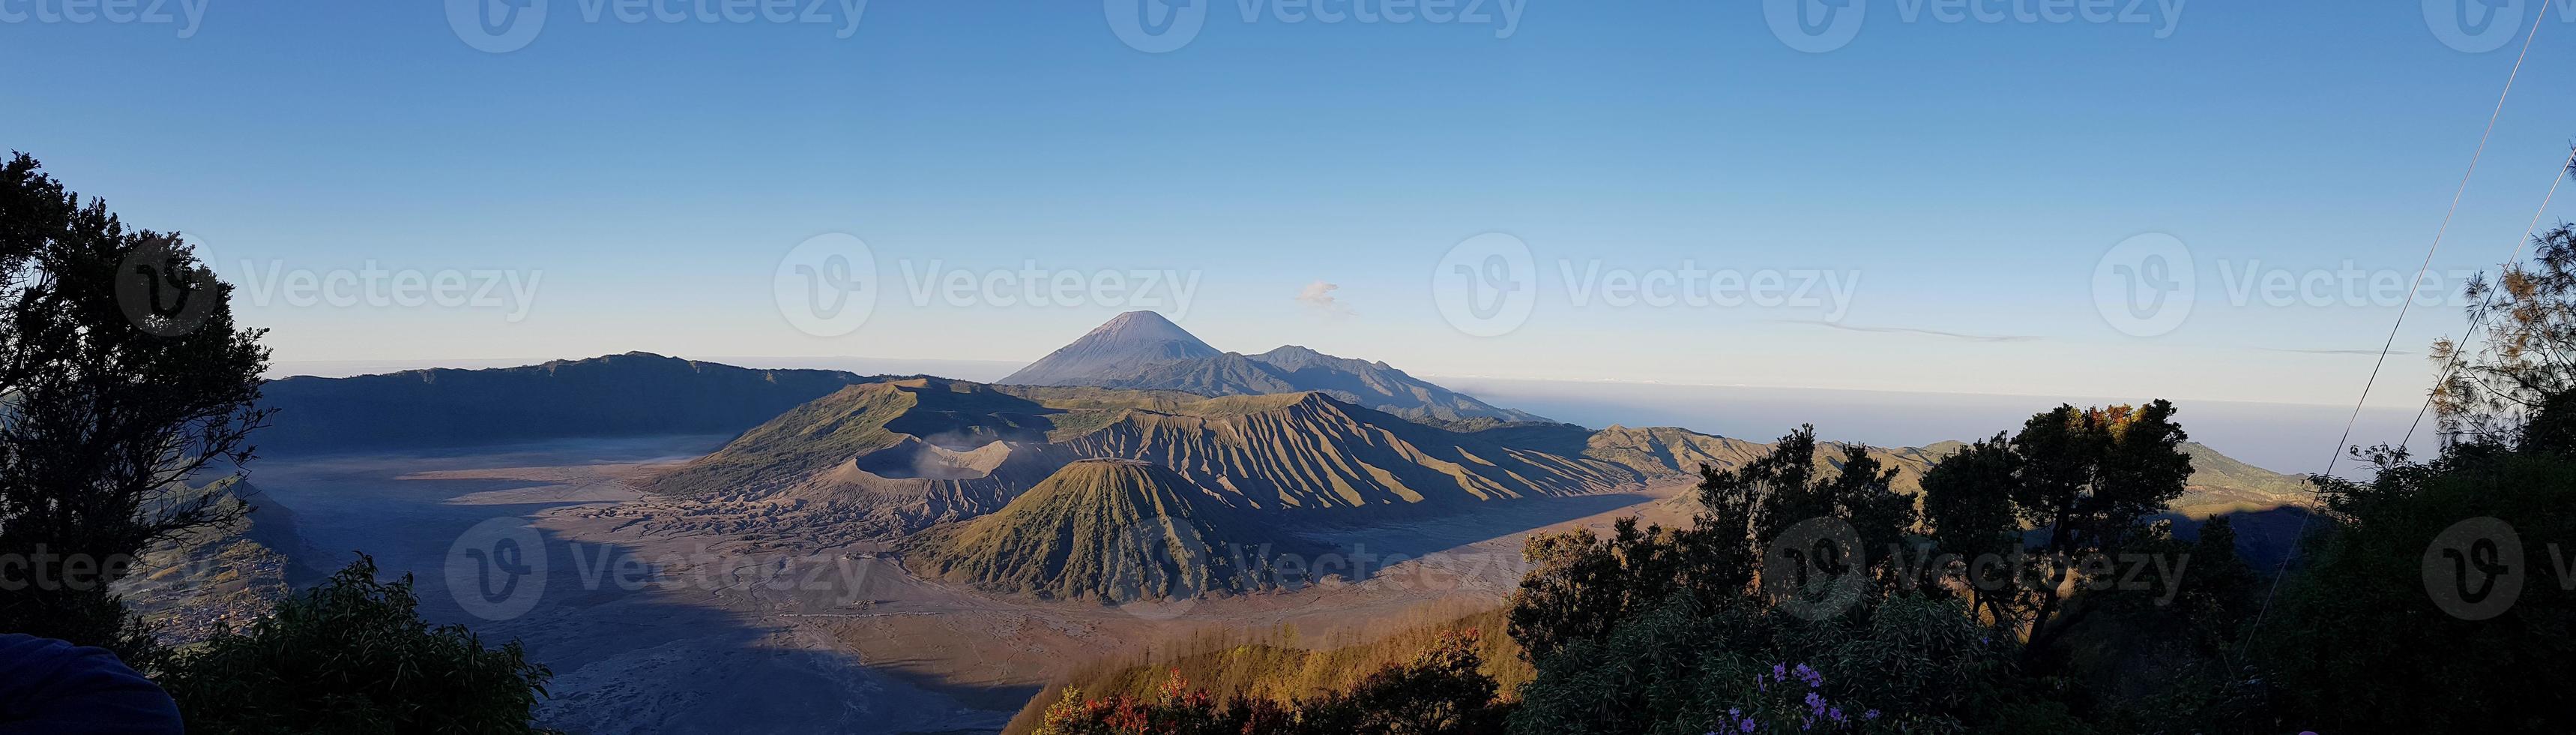 Panoramablick auf die Landschaft des Mount Bromo und seine Umgebung foto